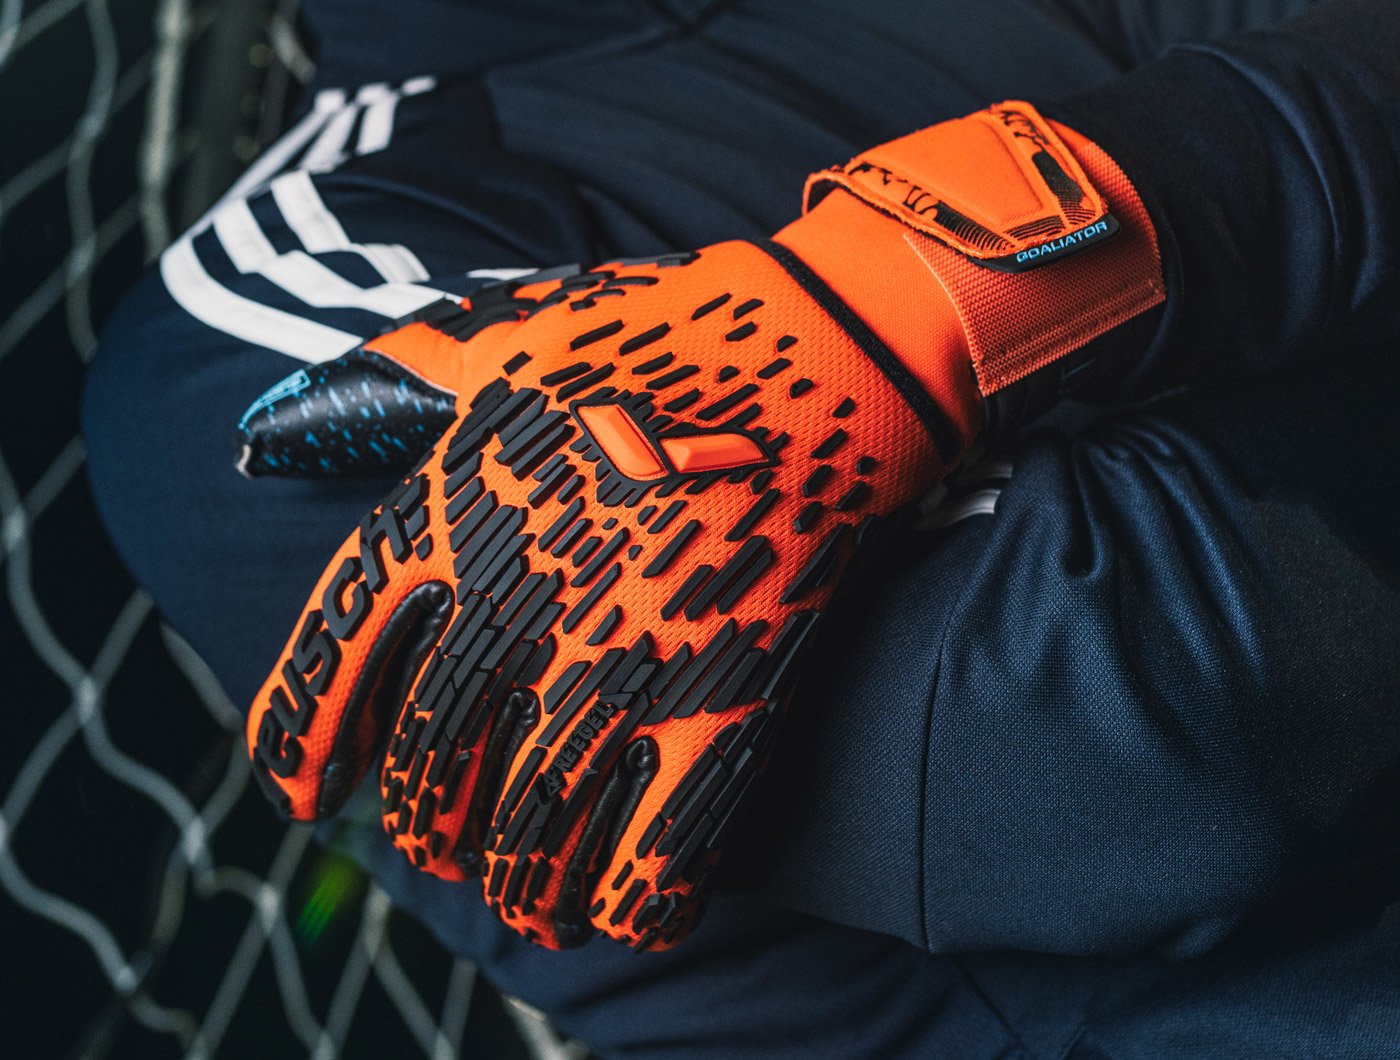 Reush Goalkeeper Gloves featuring the Reush Attrakt Freegel Fusion